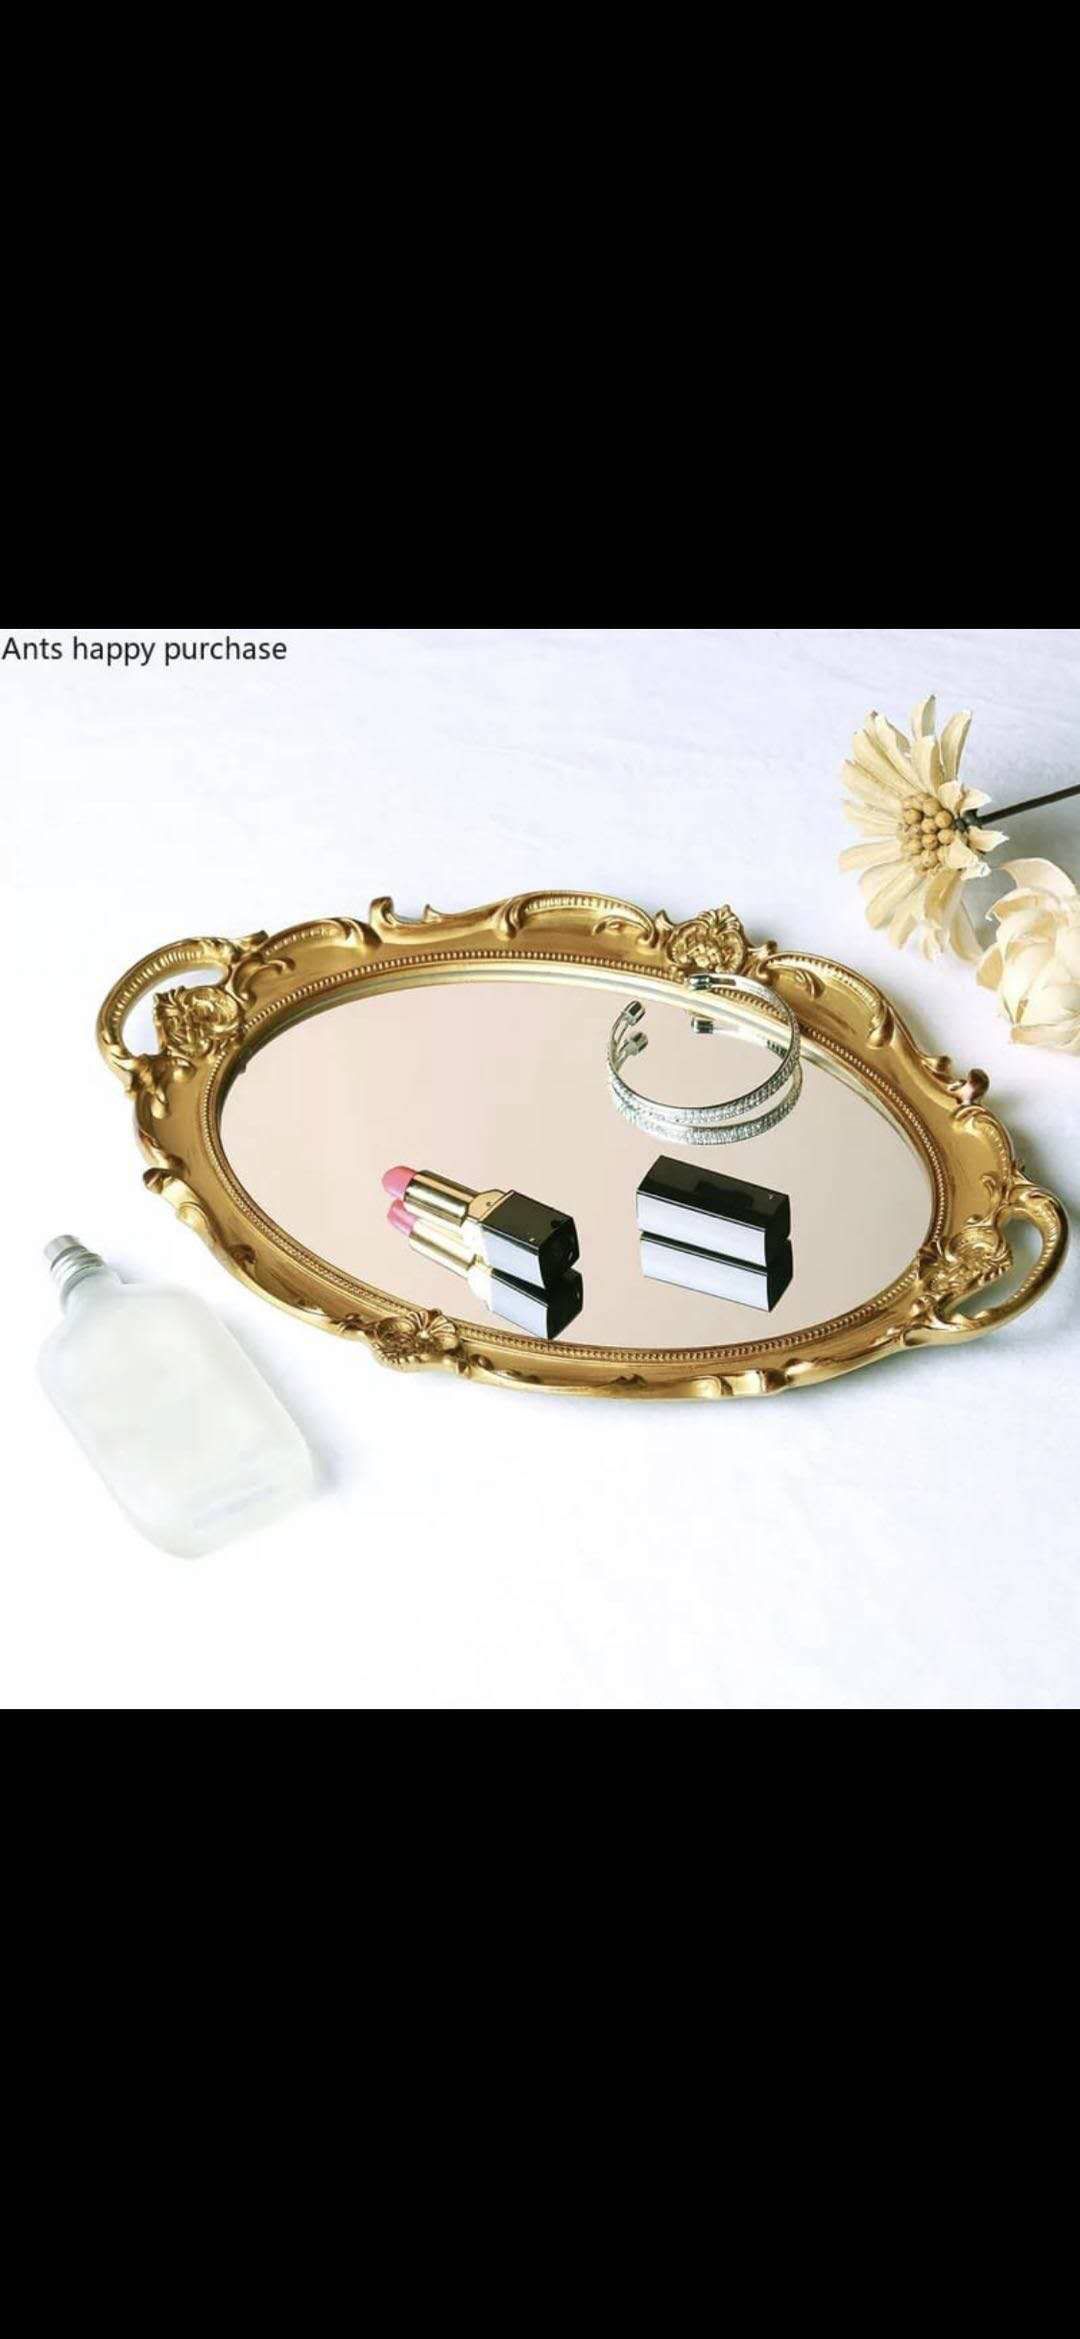 欧式 托盘挂镜化妆镜 厕所 专用 高清美丽方便使用 玻璃材质可爱风 化妆镜